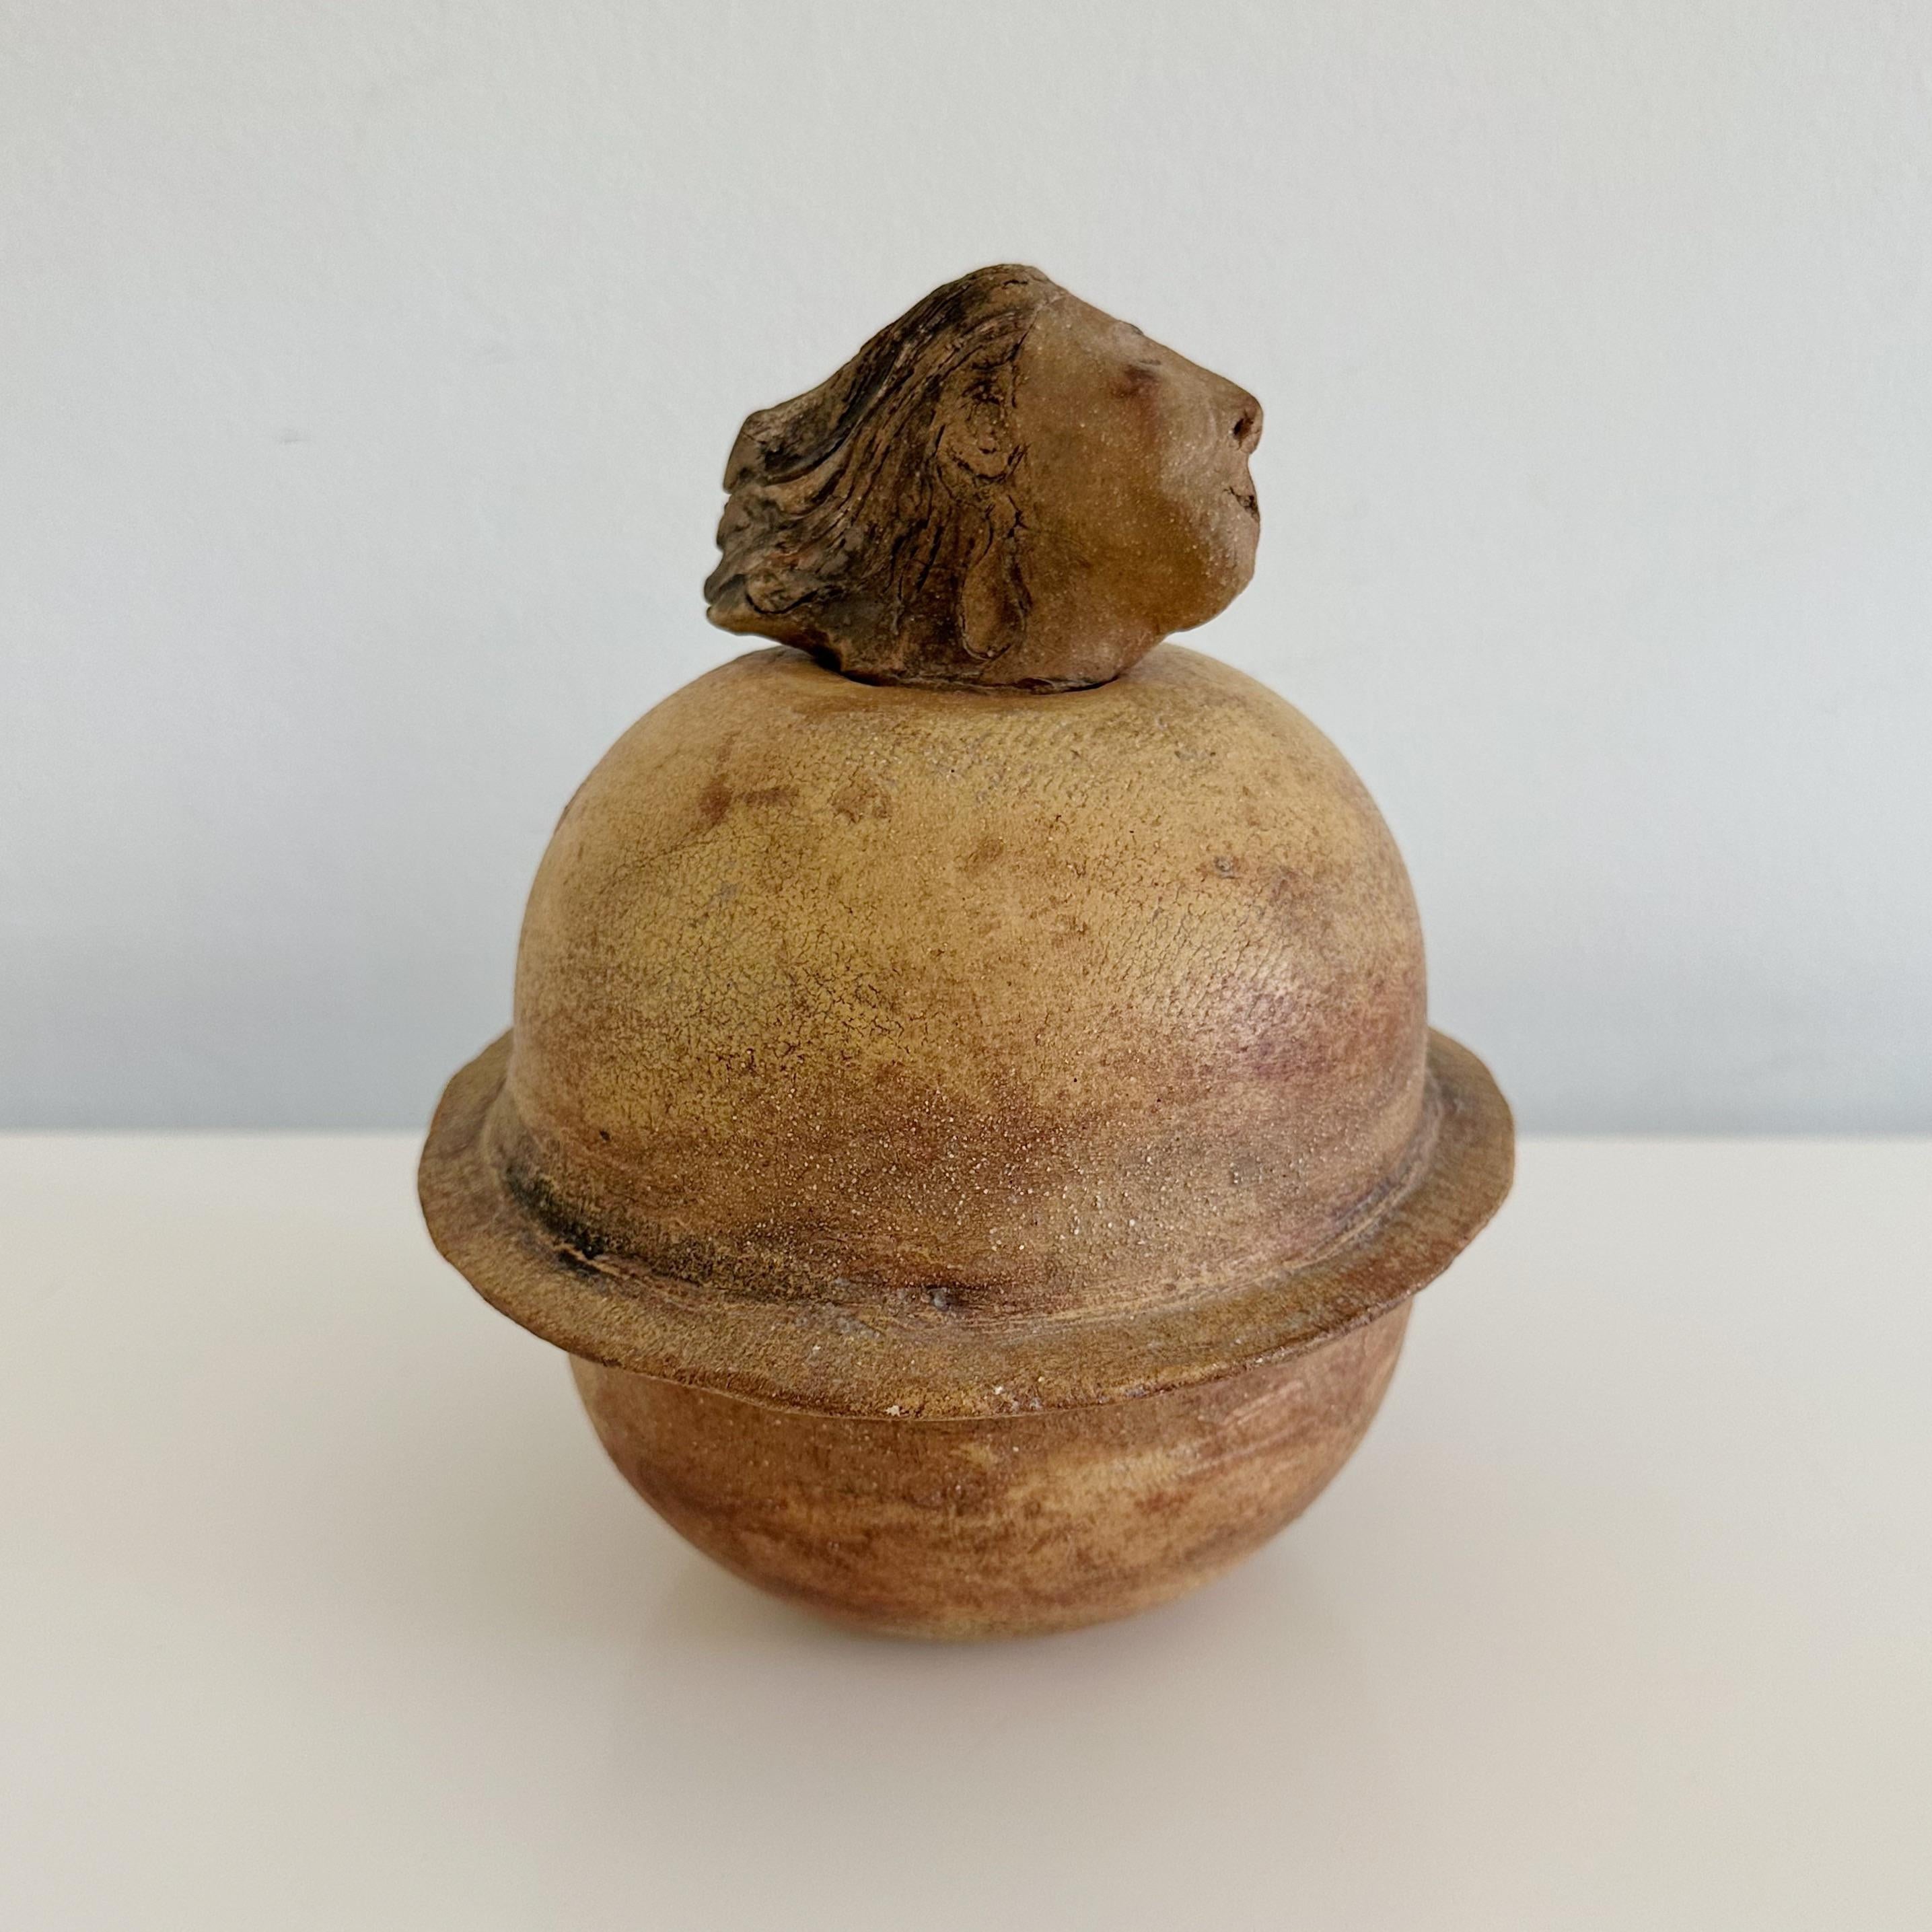 Studio-Keramikgefäß „Head“ mit Deckel von Bildhauerin Ruth Joffa (1920 - 2017) (Töpferwaren)